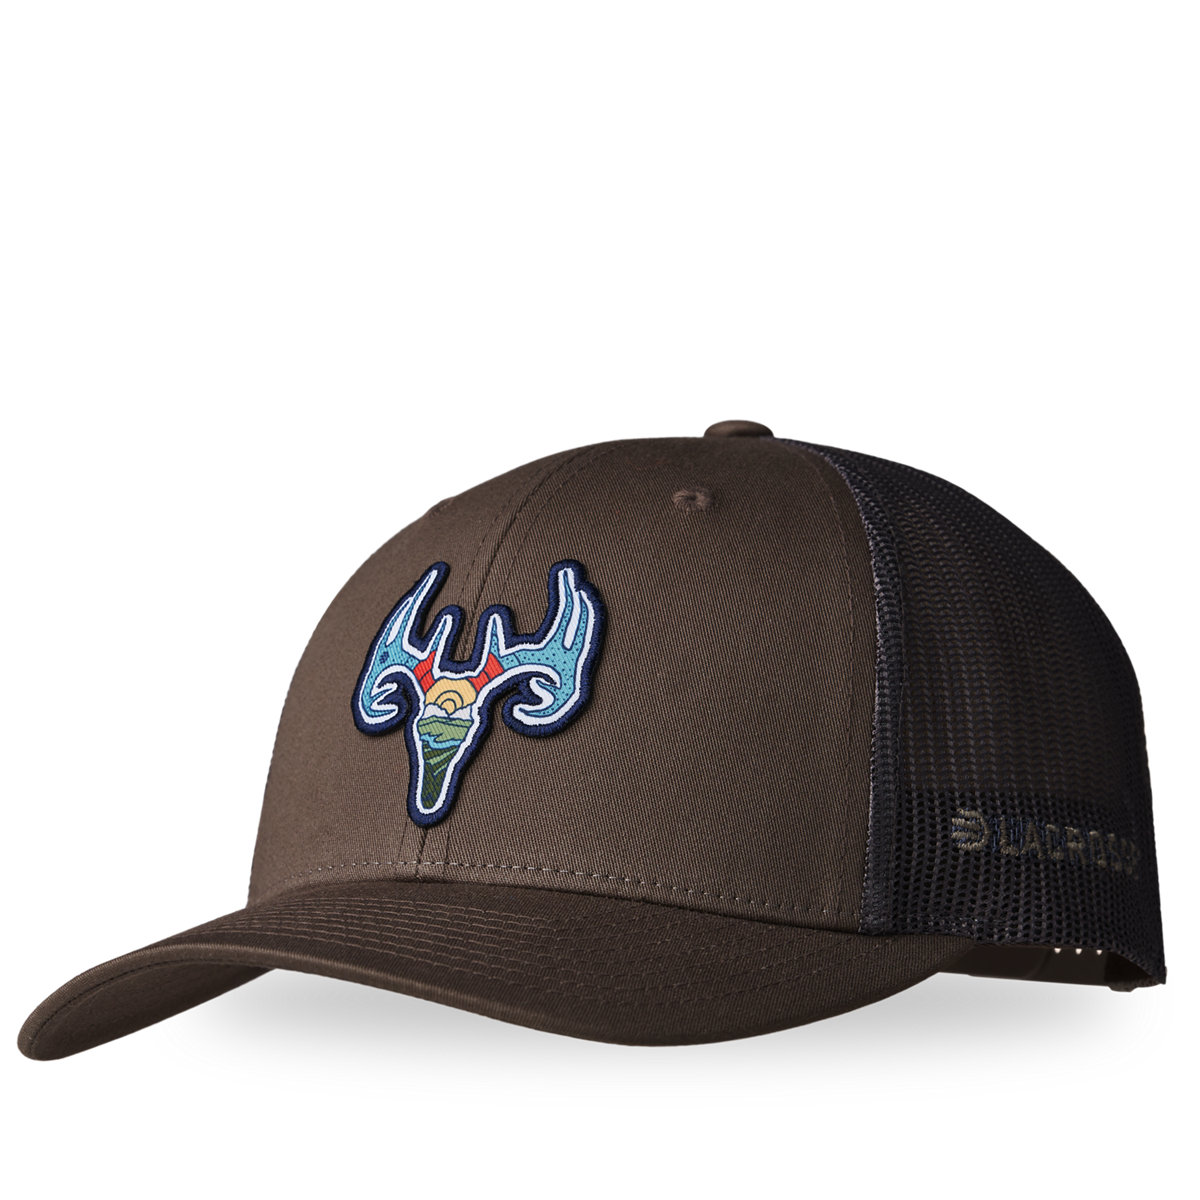 LaCrosse Footwear - LaCrosse Trucker Hat Choc Chip/Grey Brown - Deer | Trucker Caps